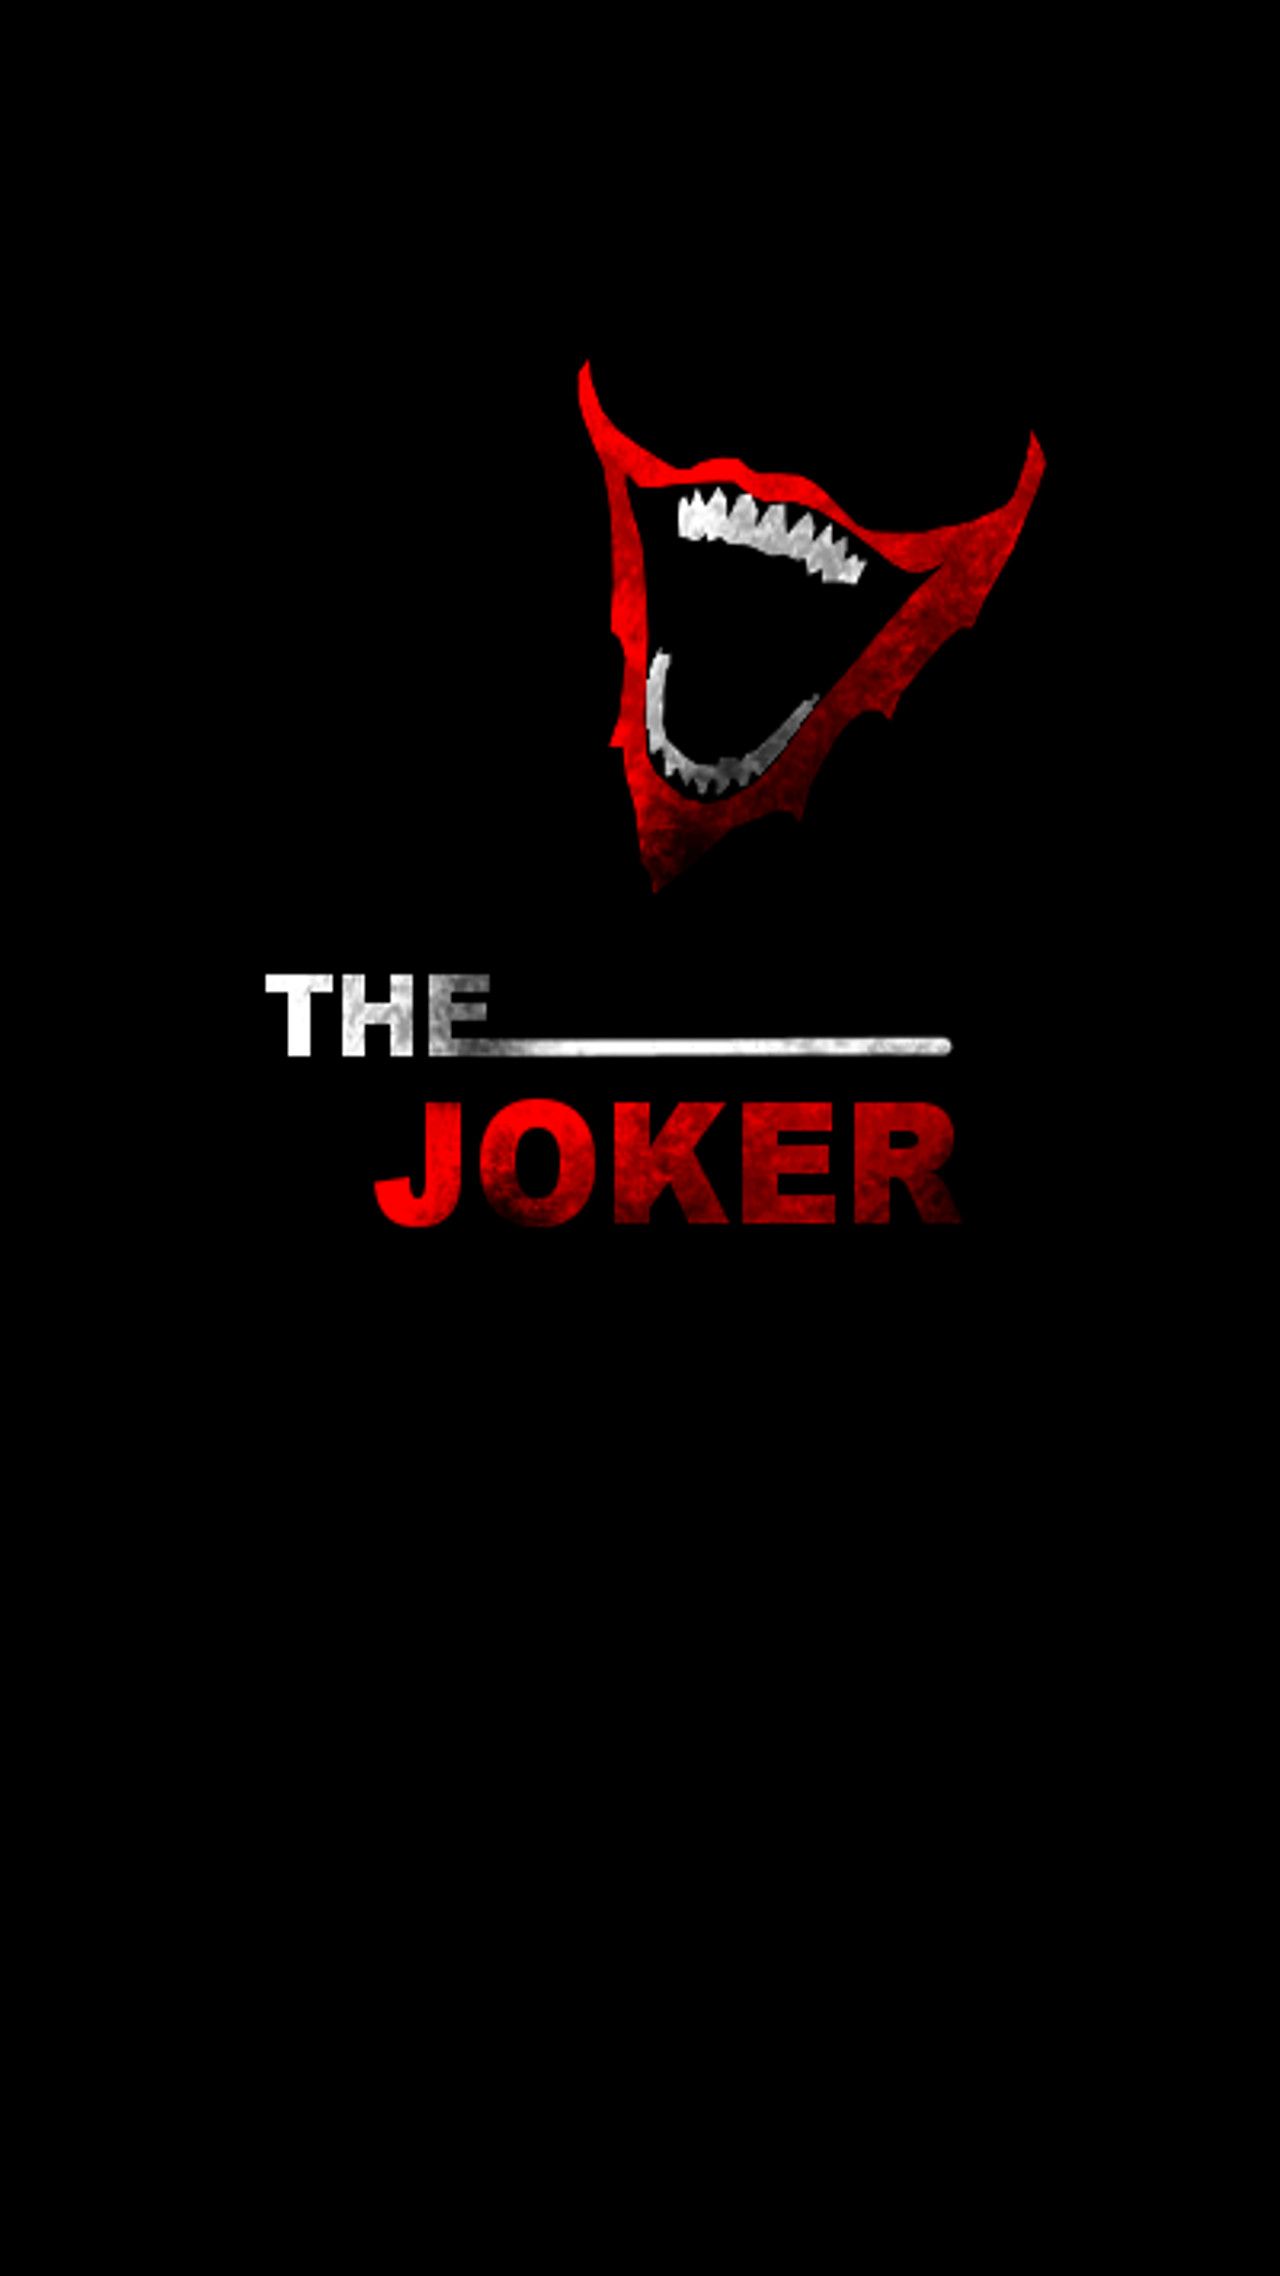 Joker iPhone 6 wallpaper by KairoFall Joker iPhone 6 wallpaper by KairoFall. Joker wallpaper, Joker iphone wallpaper, Joker pics